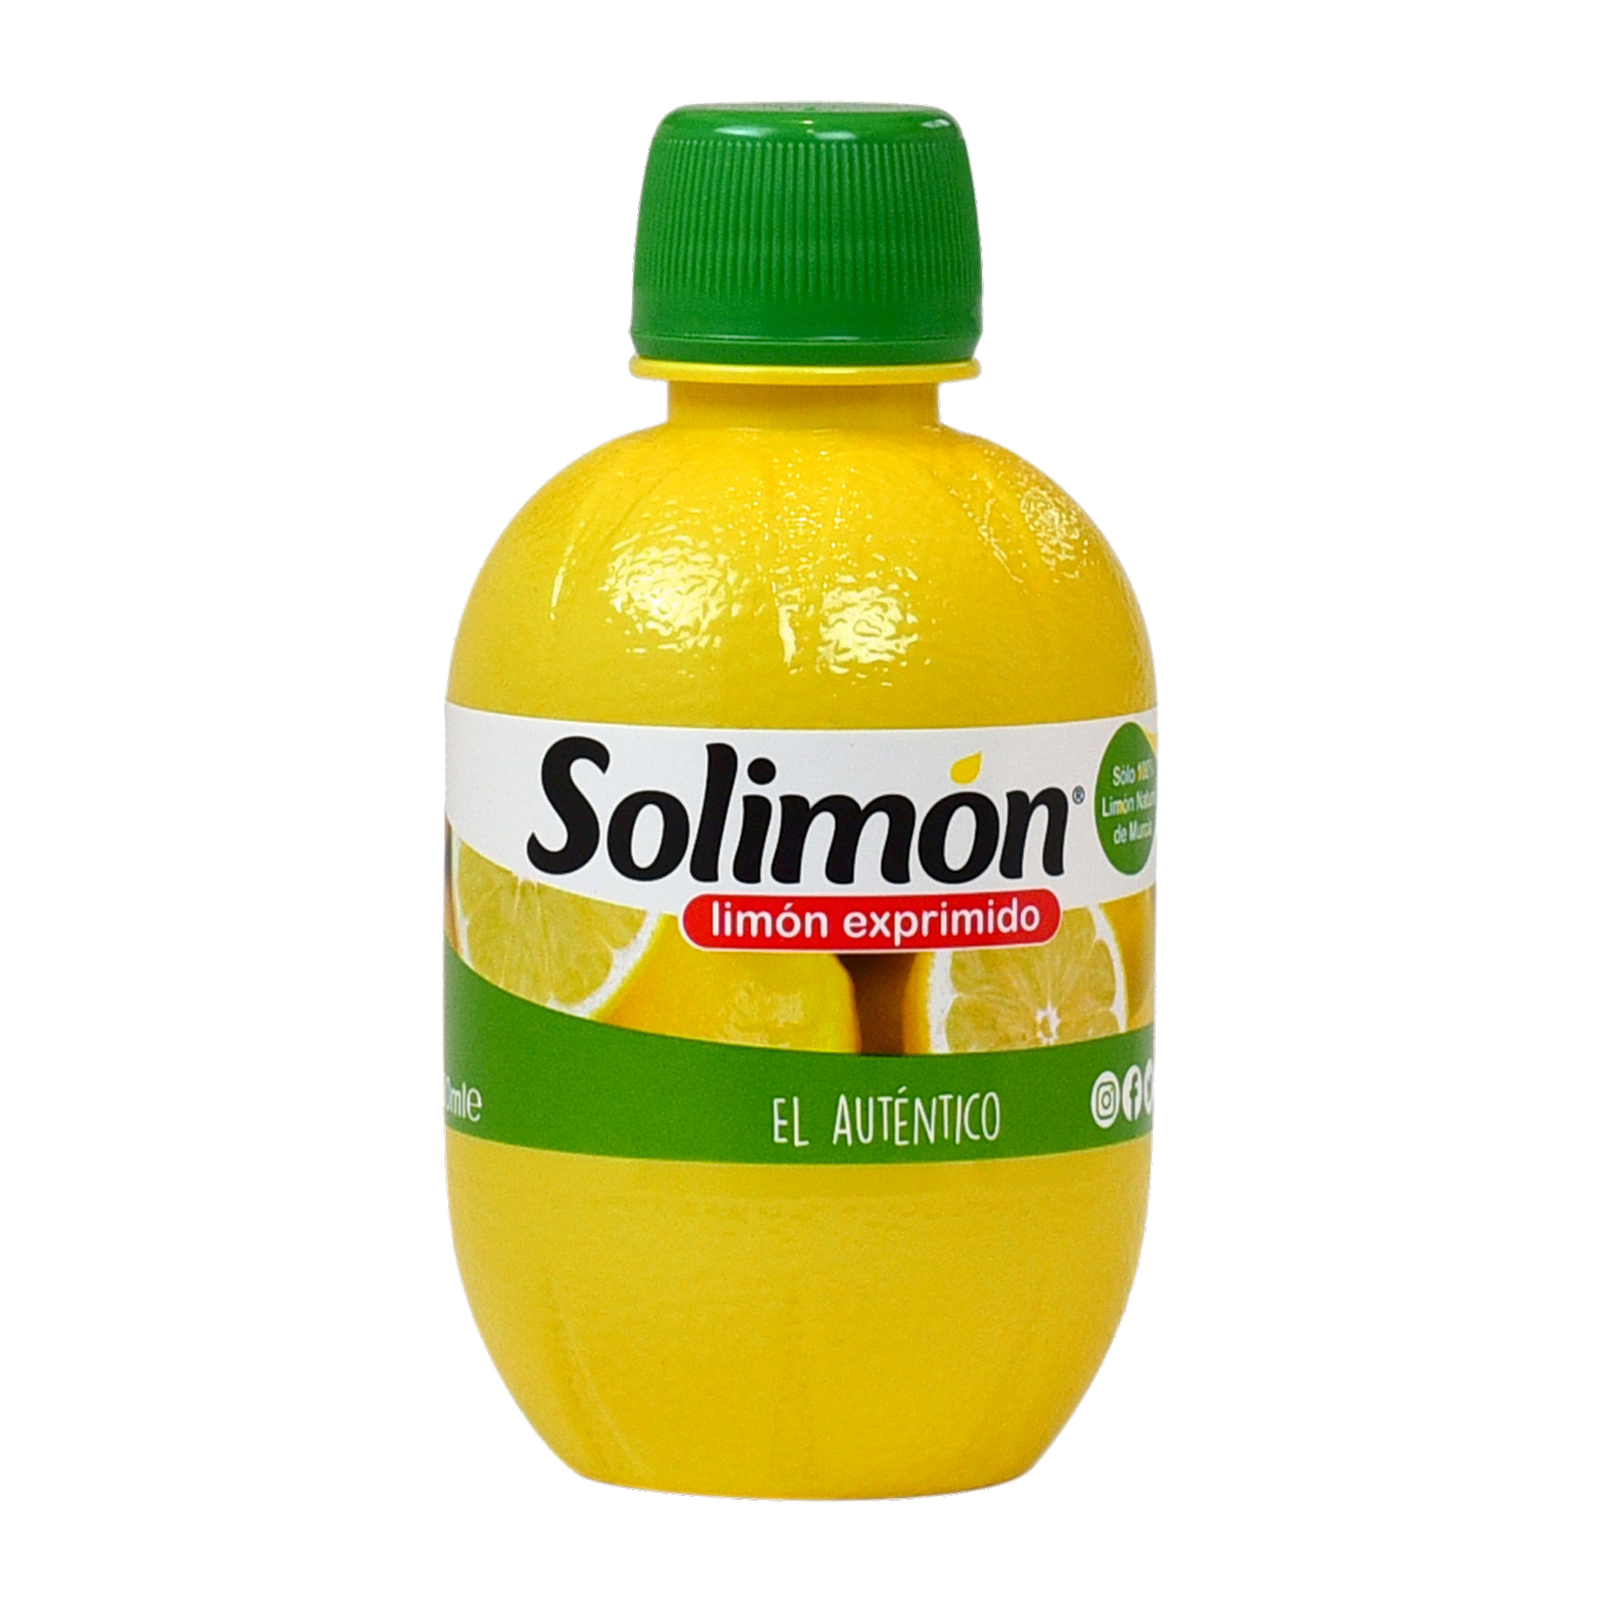 Limón exprimido 100% natural de Solimón.